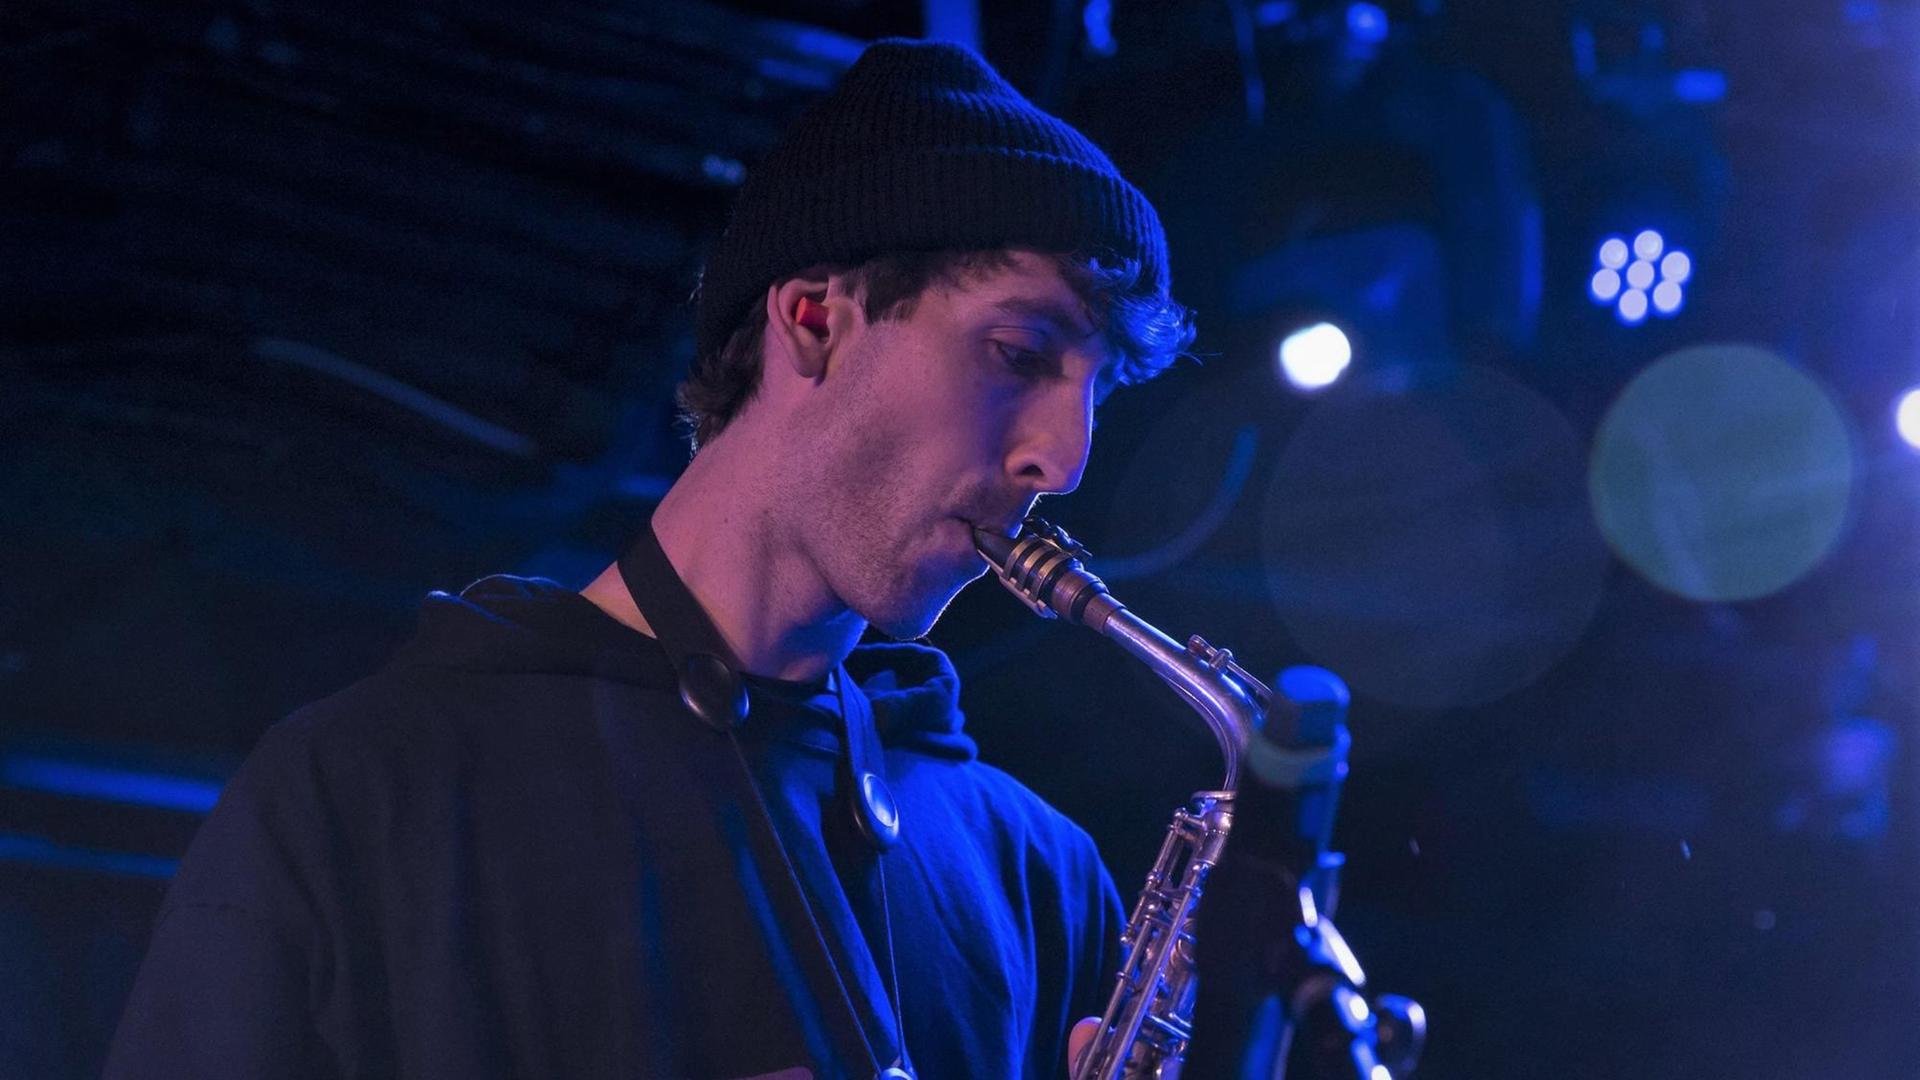 Der Jazz-Musiker Sam Gendel spielt Saxofon auf einer Bühne, teilweise in blaues Licht getaucht.